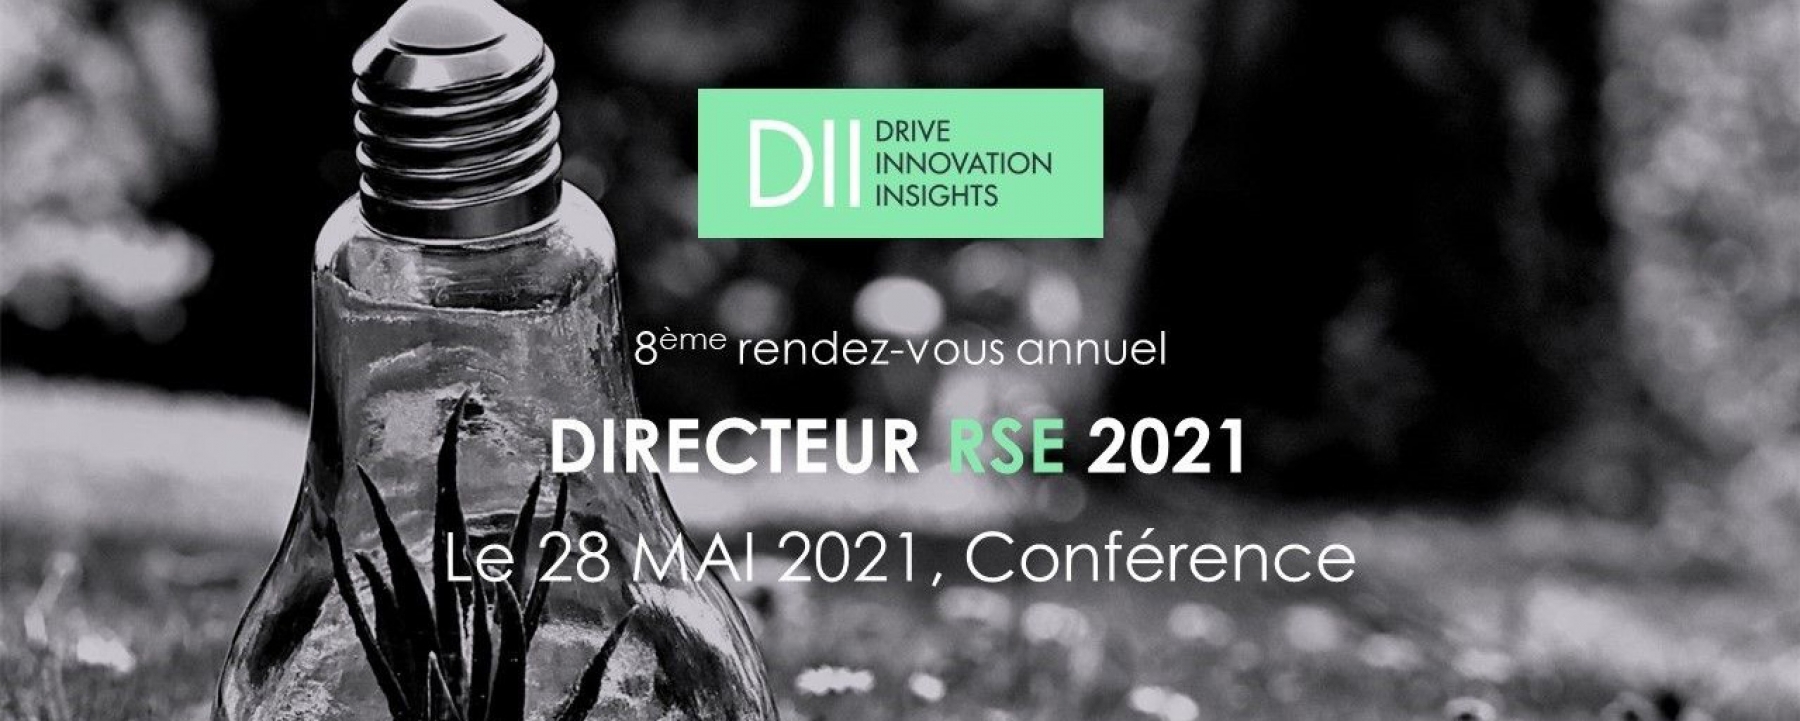 Directeur RSE 2021, organisé par DII le 28 mai